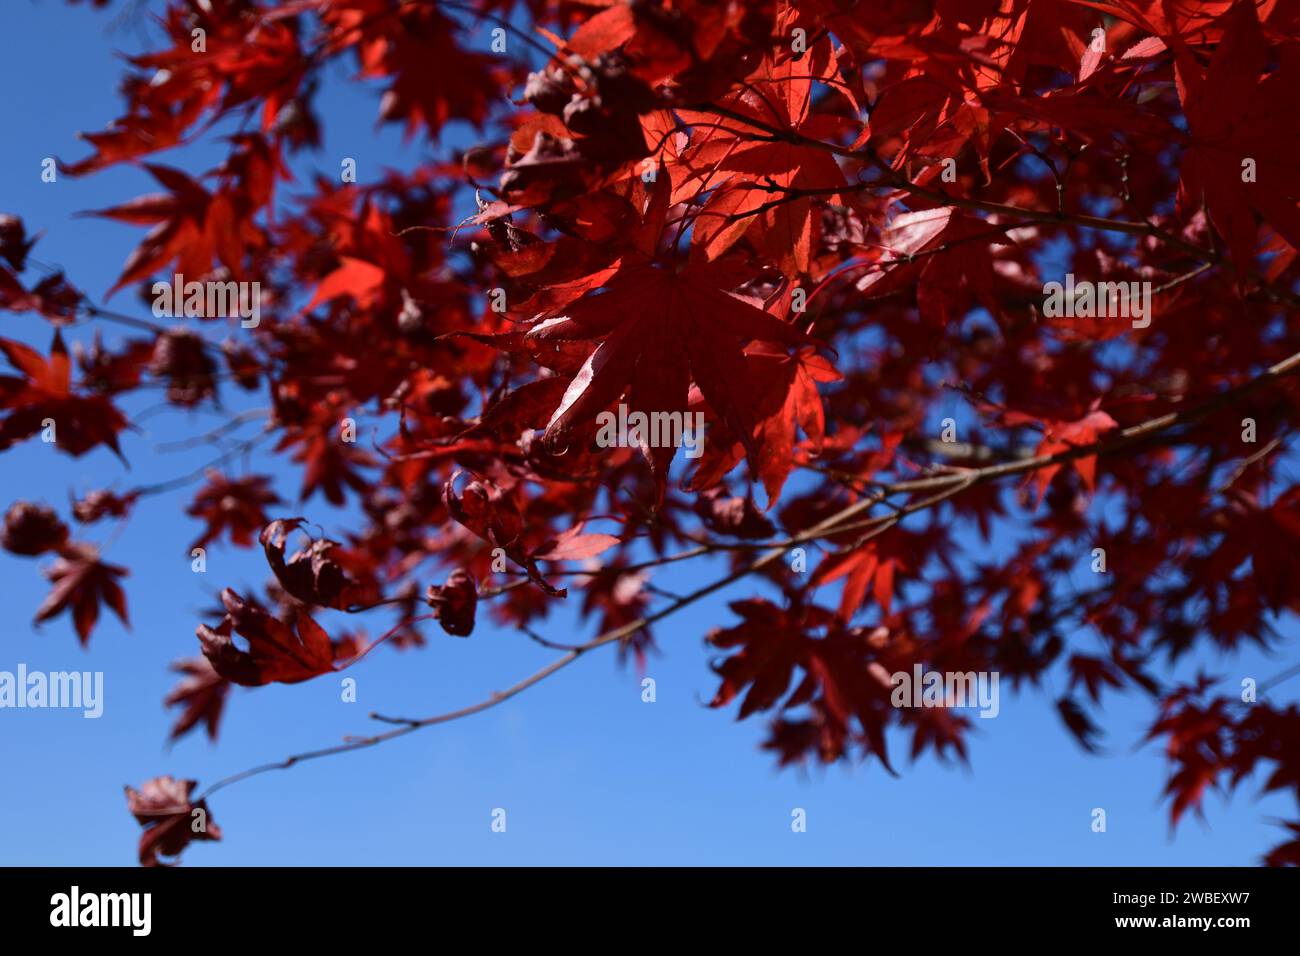 Un'immagine pittoresca di un cielo blu brillante con foglie rosse vibranti sparse nell'aria Foto Stock